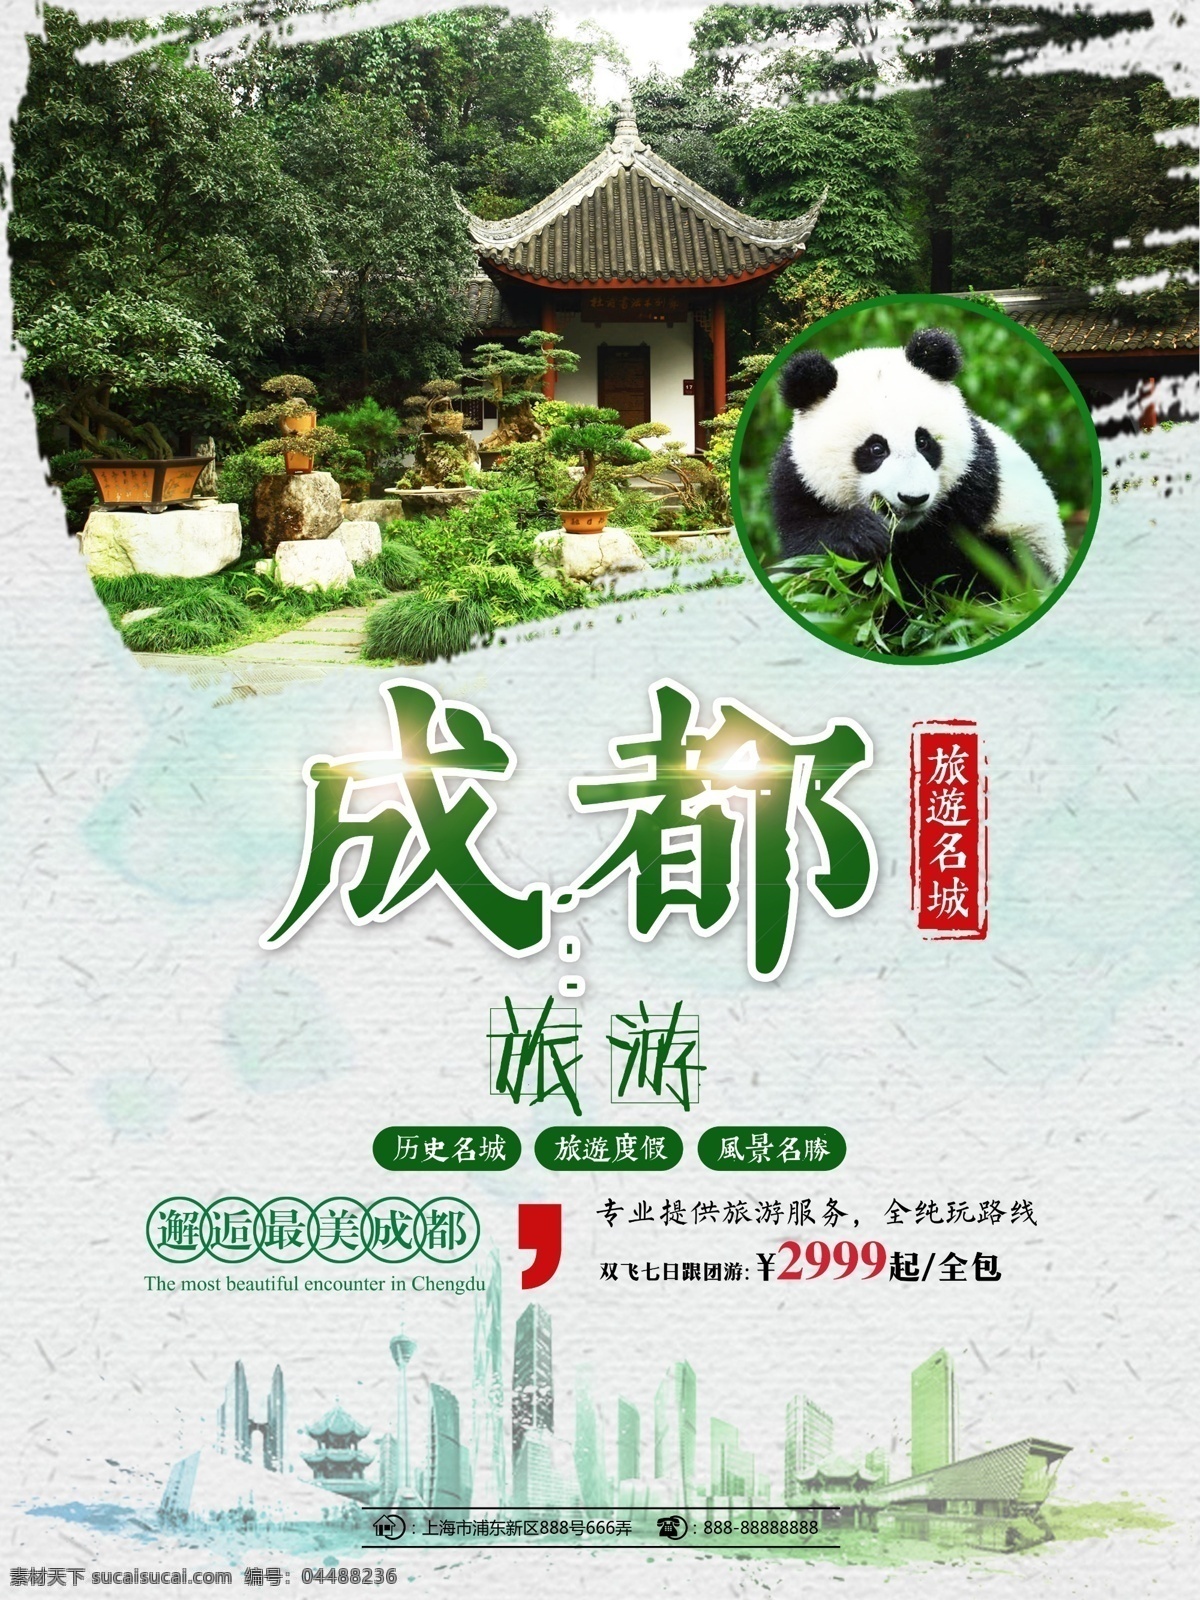 绿色 水墨 风 成都 旅游 旅行社 熊猫 促销 海报 水墨风格 成都旅游 信息 成都旅游名城 最美成都 成都之旅 邂逅成都 成都大熊猫 成都美景 旅游海报